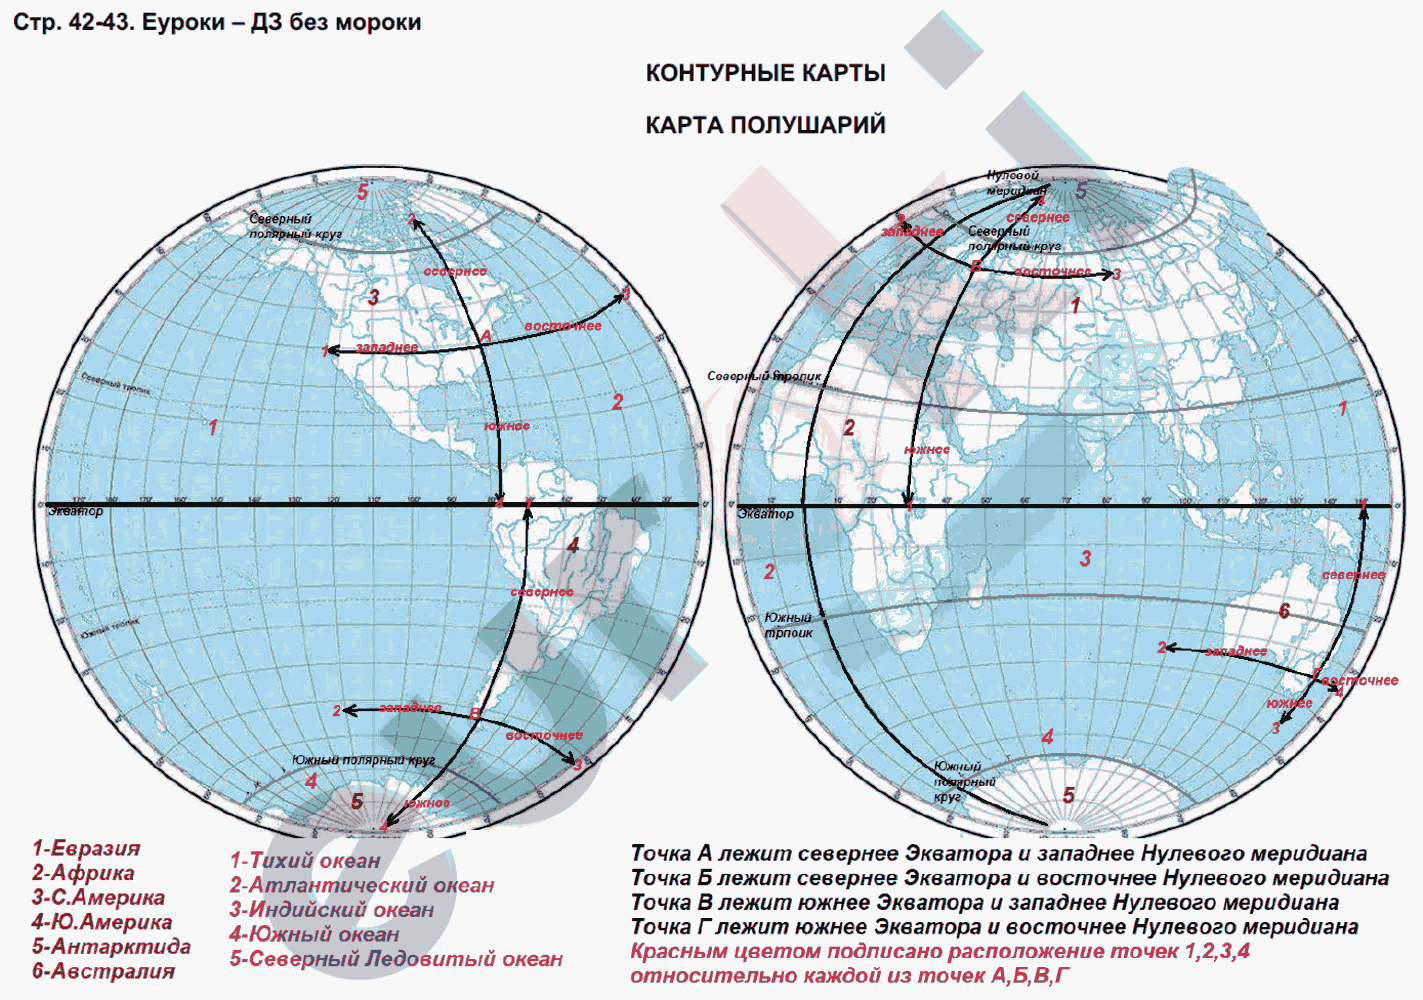 Точки расположенные северном полушарии имеют. Меридиан на контурной карте. Карта полушарий с широтами. Карта полушарий с координатами широты и долготы. Меридианы на карте полушарий.